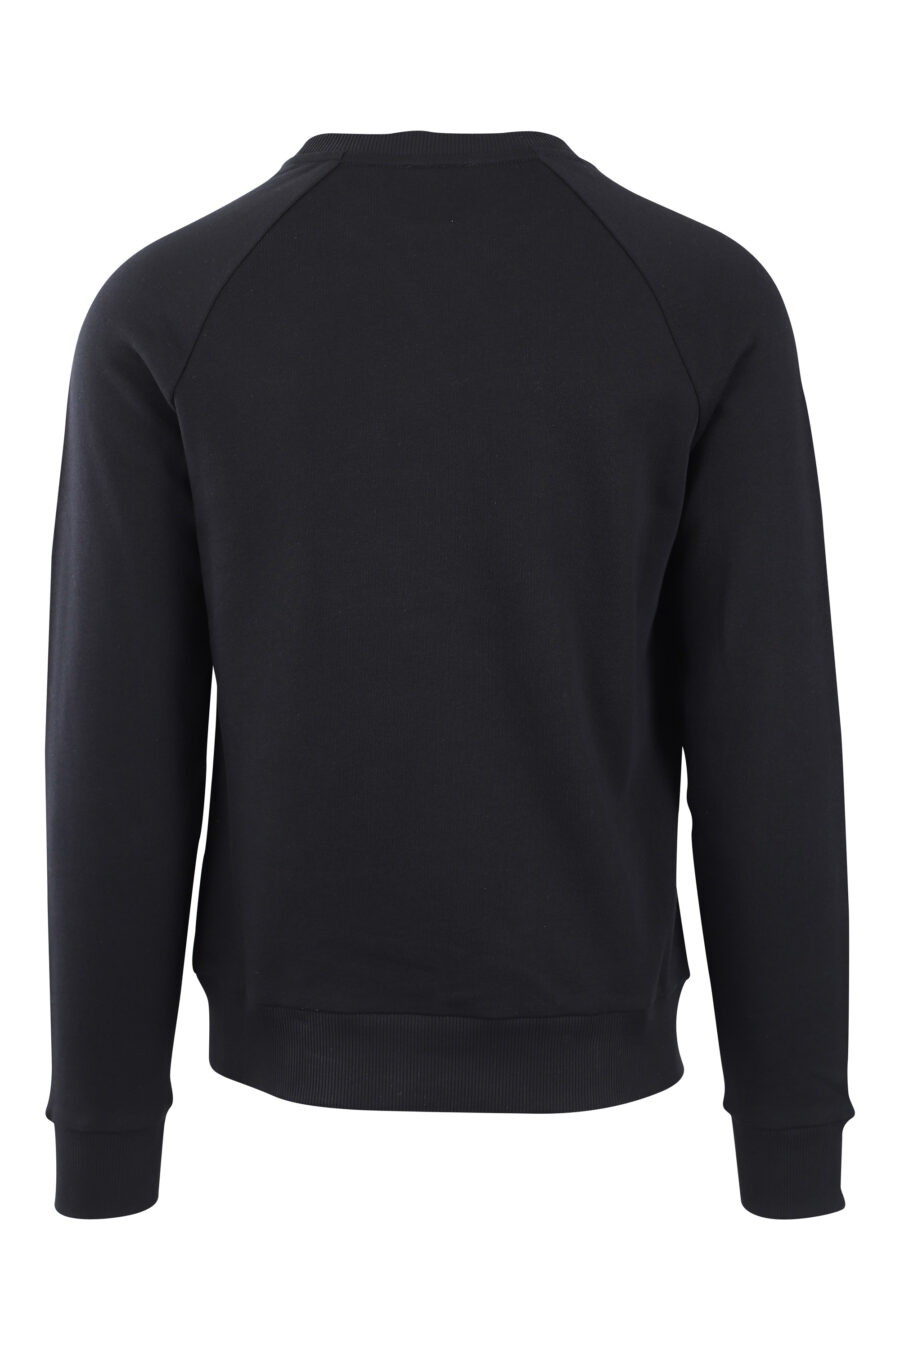 Schwarzes Sweatshirt mit weißem Maxilogo "paris" - IMG 2559